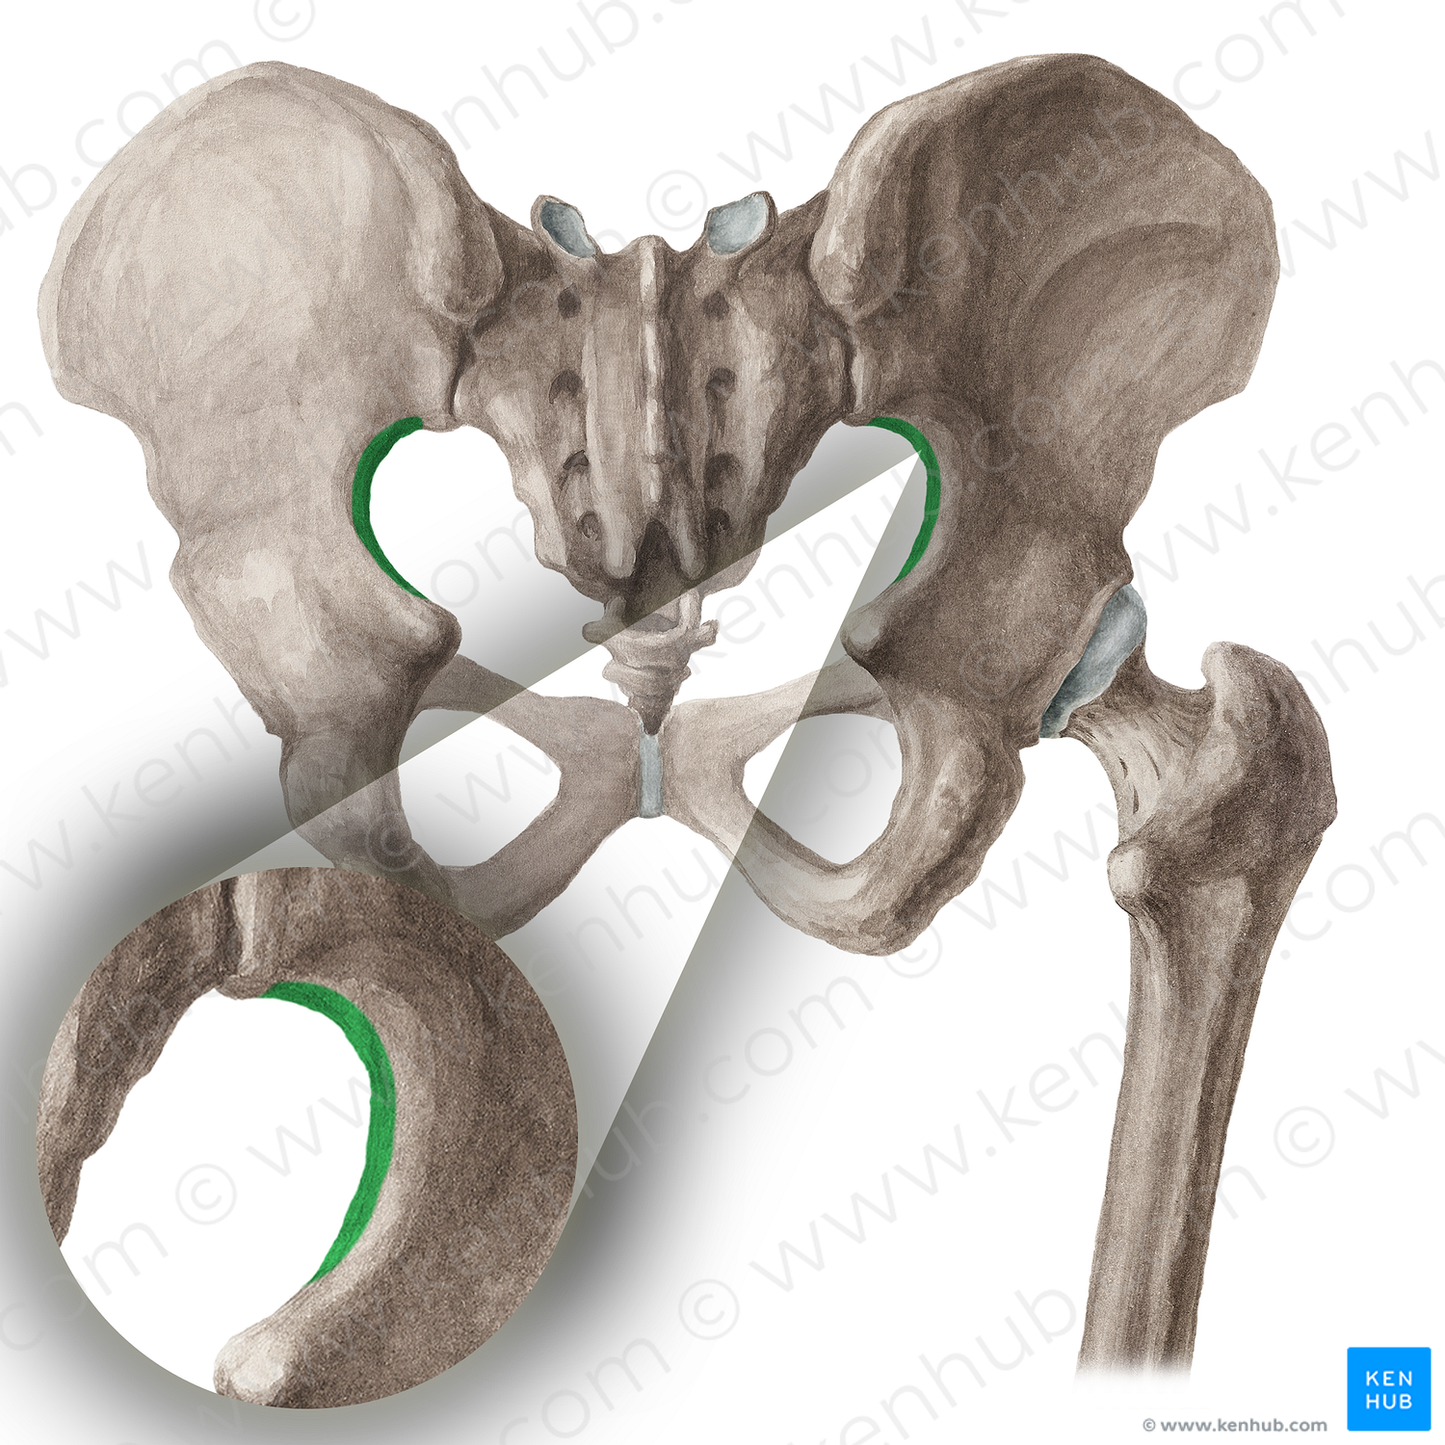 Greater sciatic notch of hip bone (#16028)